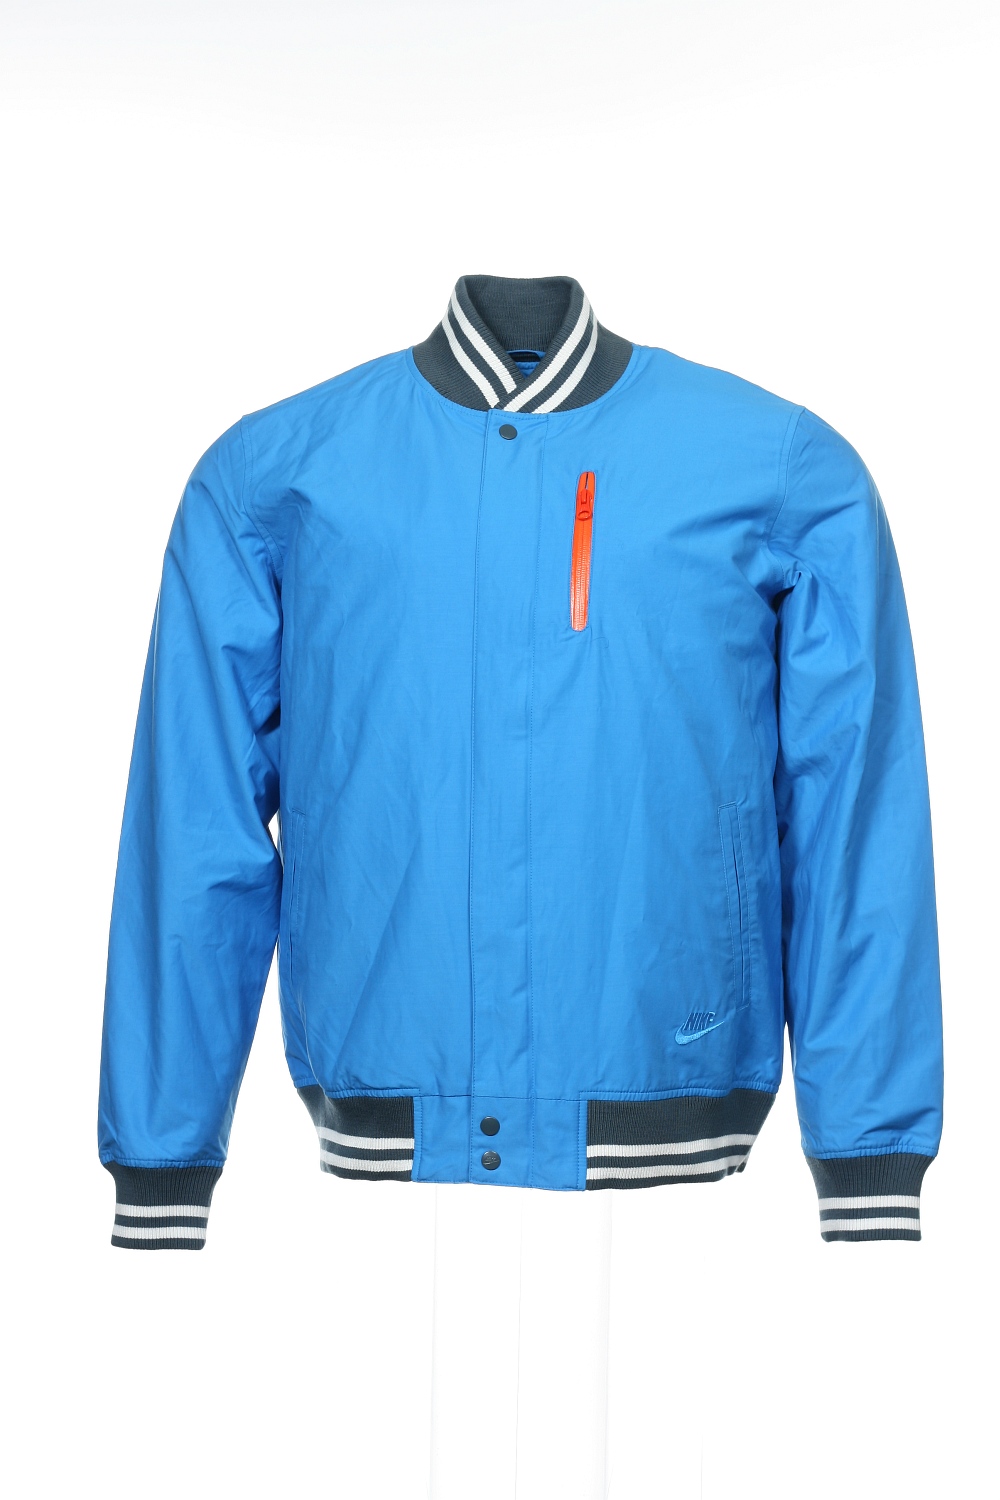 nike blue bomber jacket